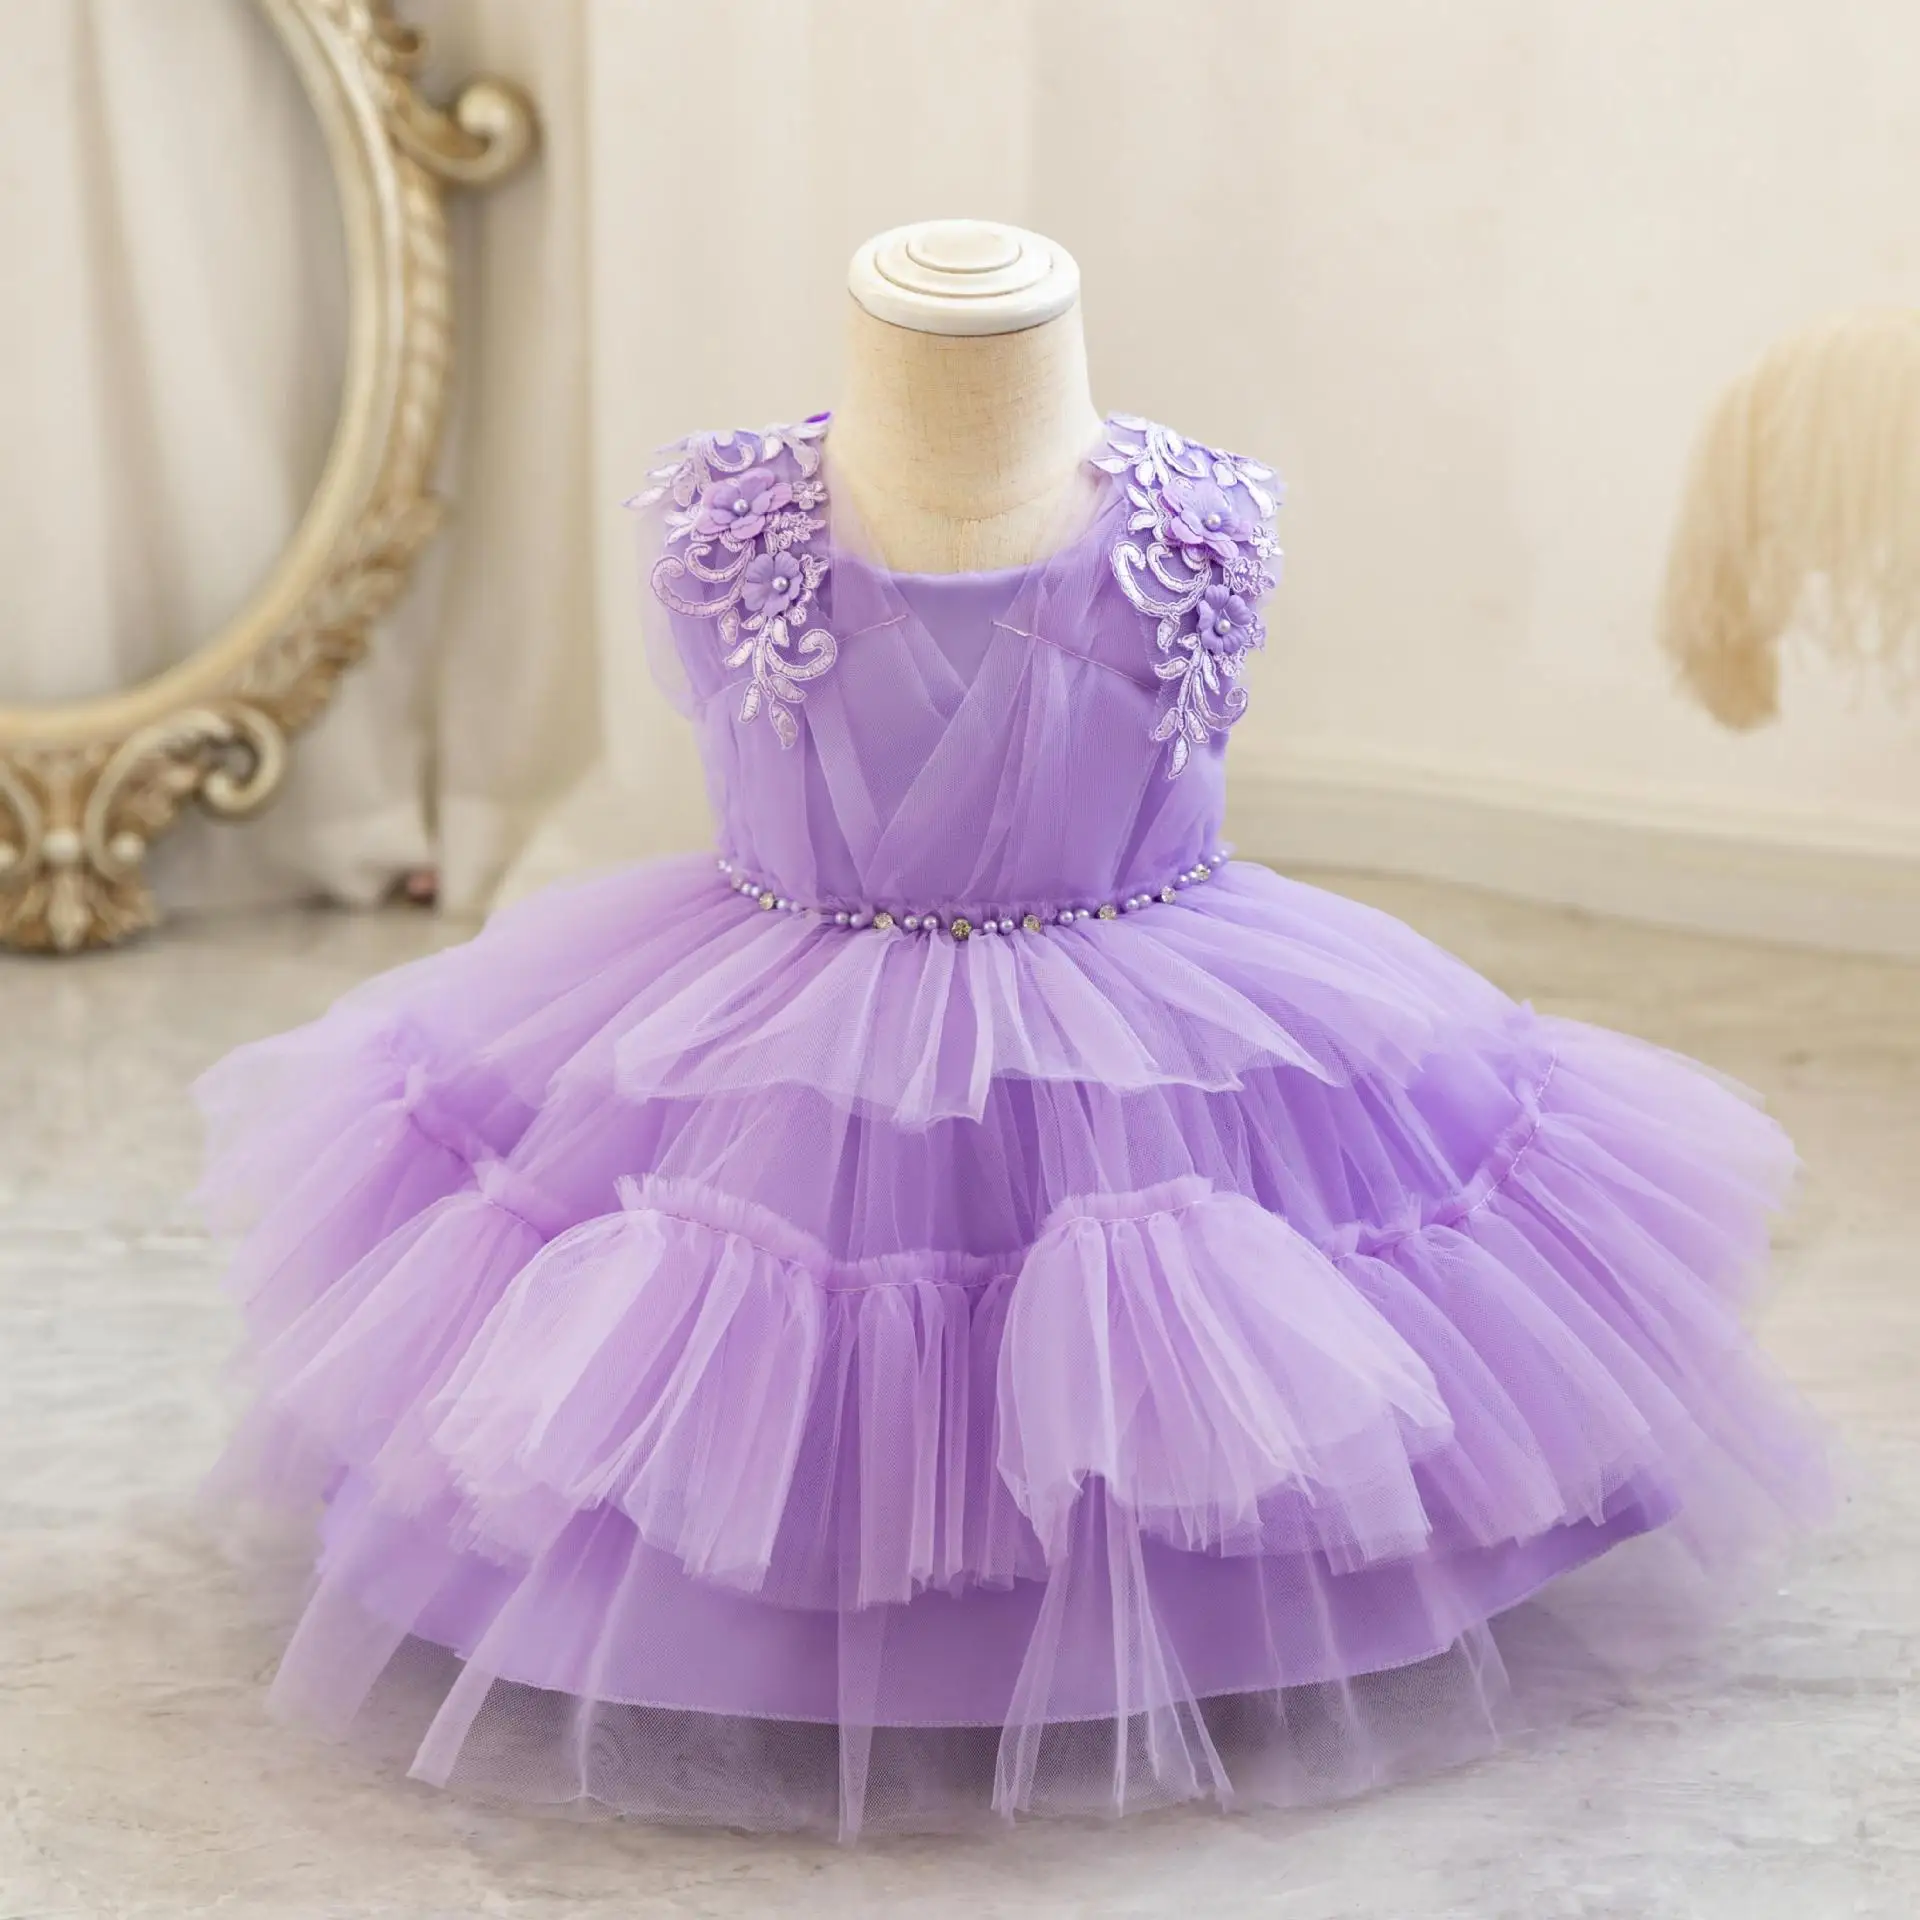 Сетчатое платье принцессы, платье для девочки на первый день рождения, свадебное платье для девочки в цветочек, детское платье для выступления на фортепиано